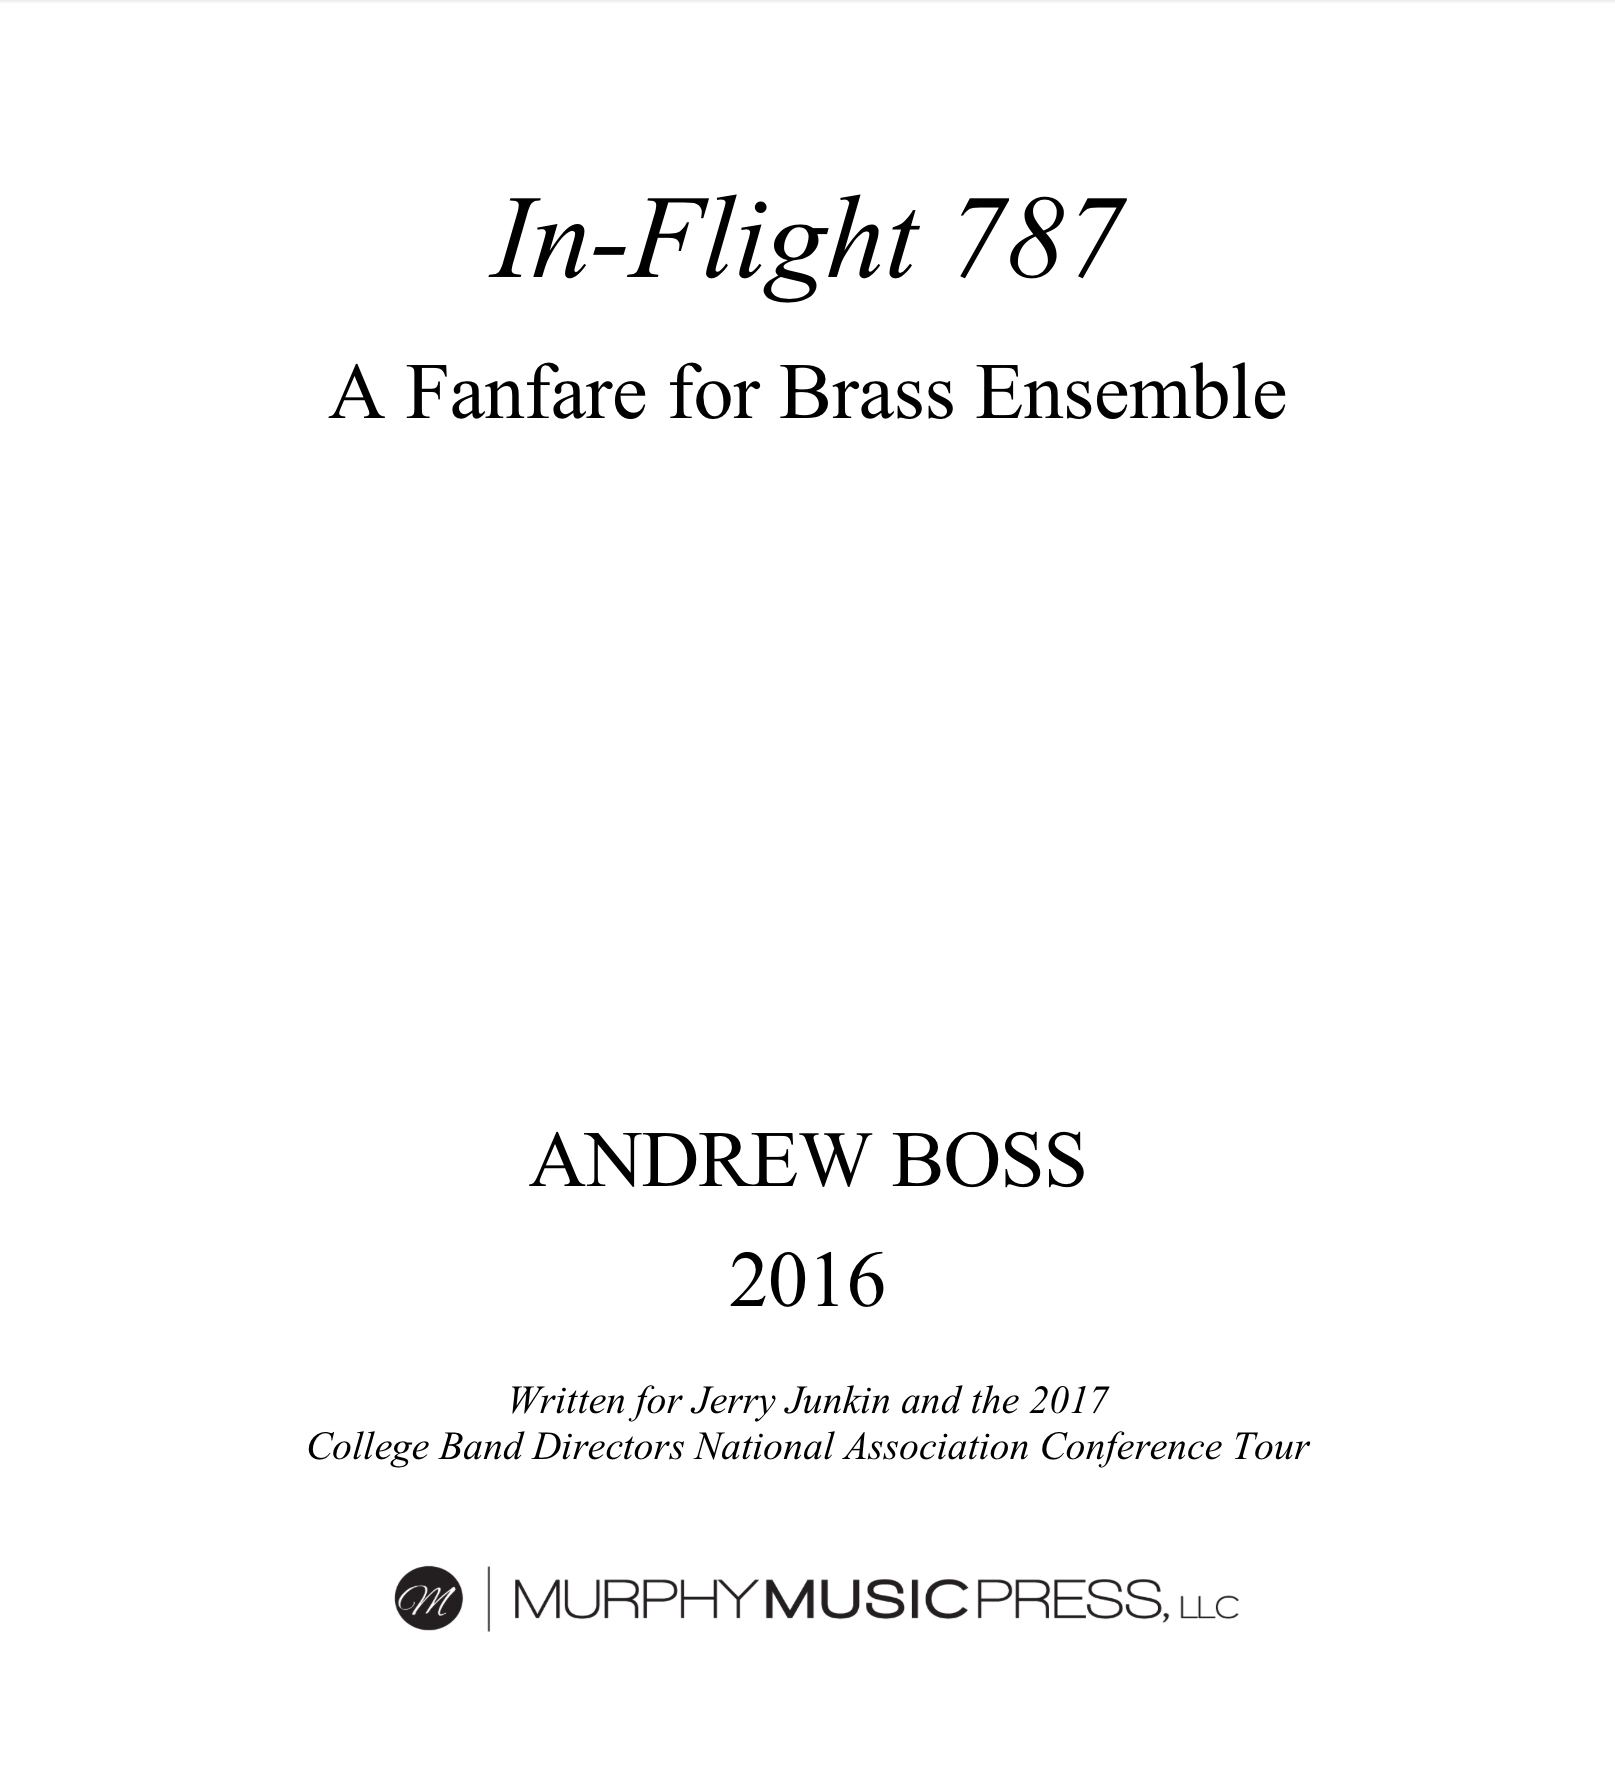 In-flight 787 by Andrew Boss